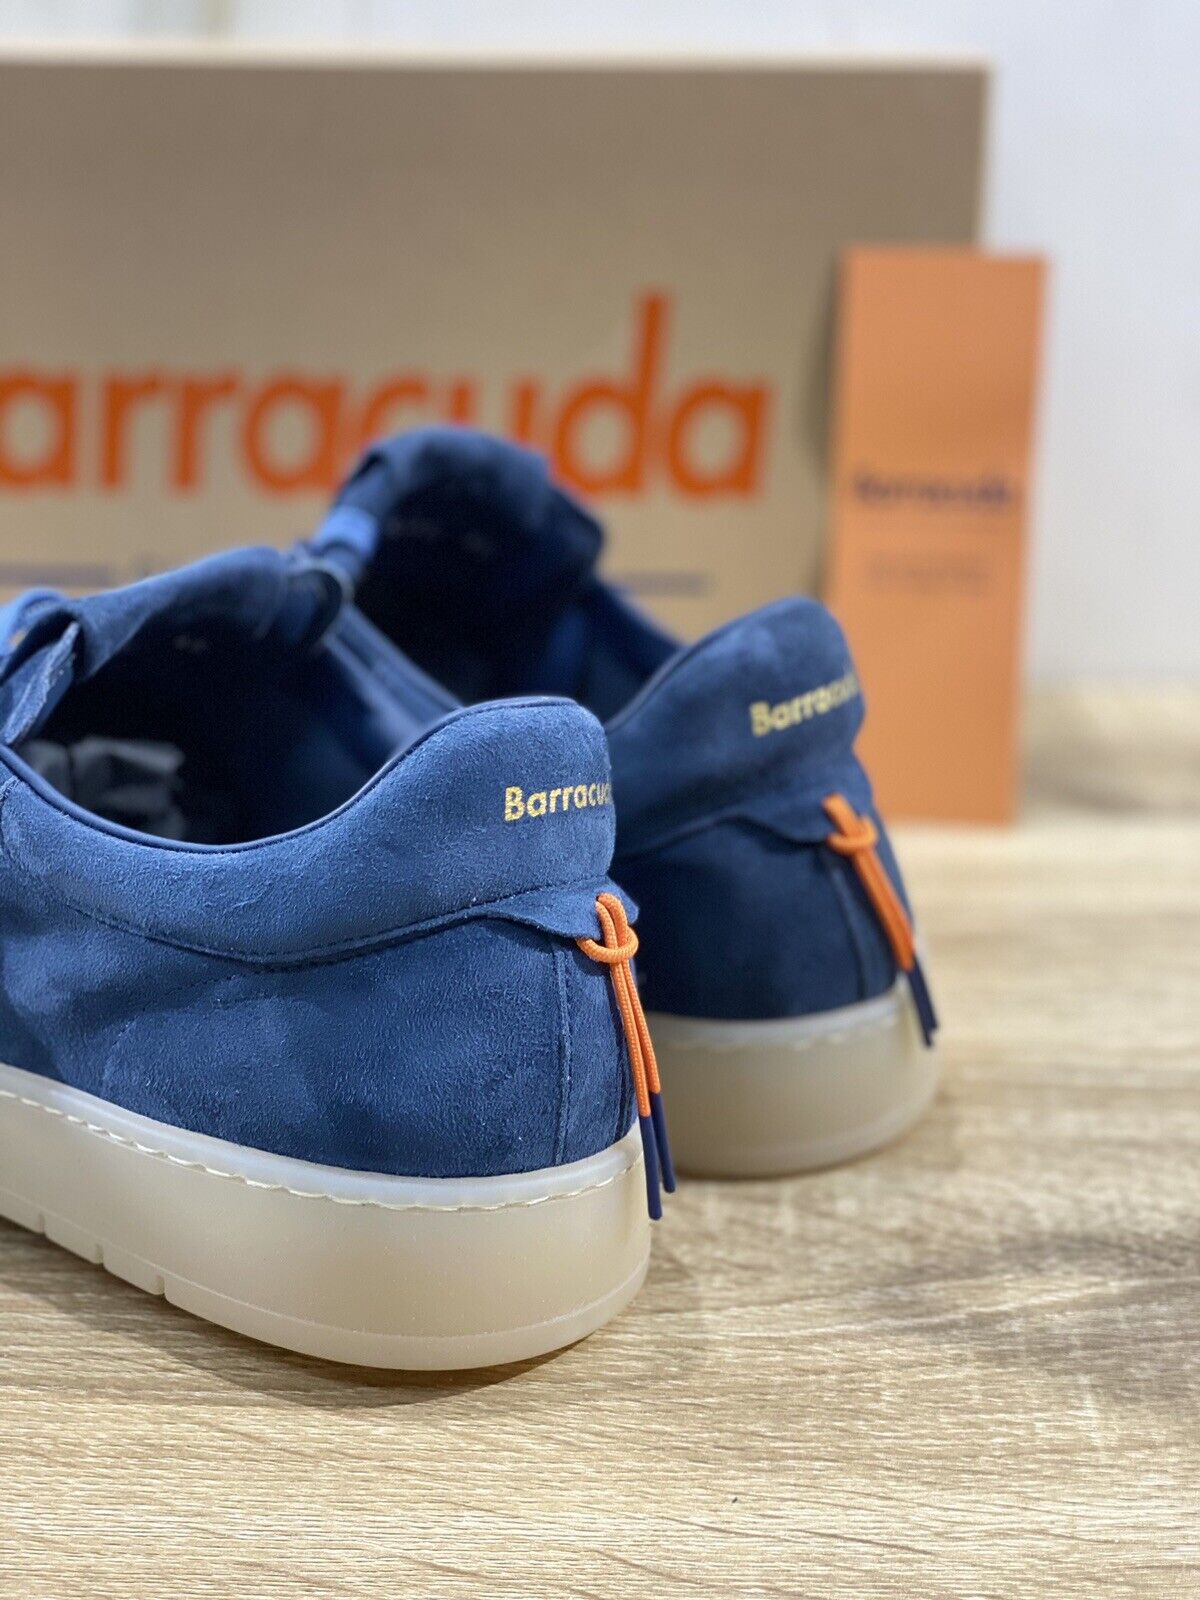 Barracuda Sneaker Uomo Camoscione Vintage Fully Made In Italy Denim 45